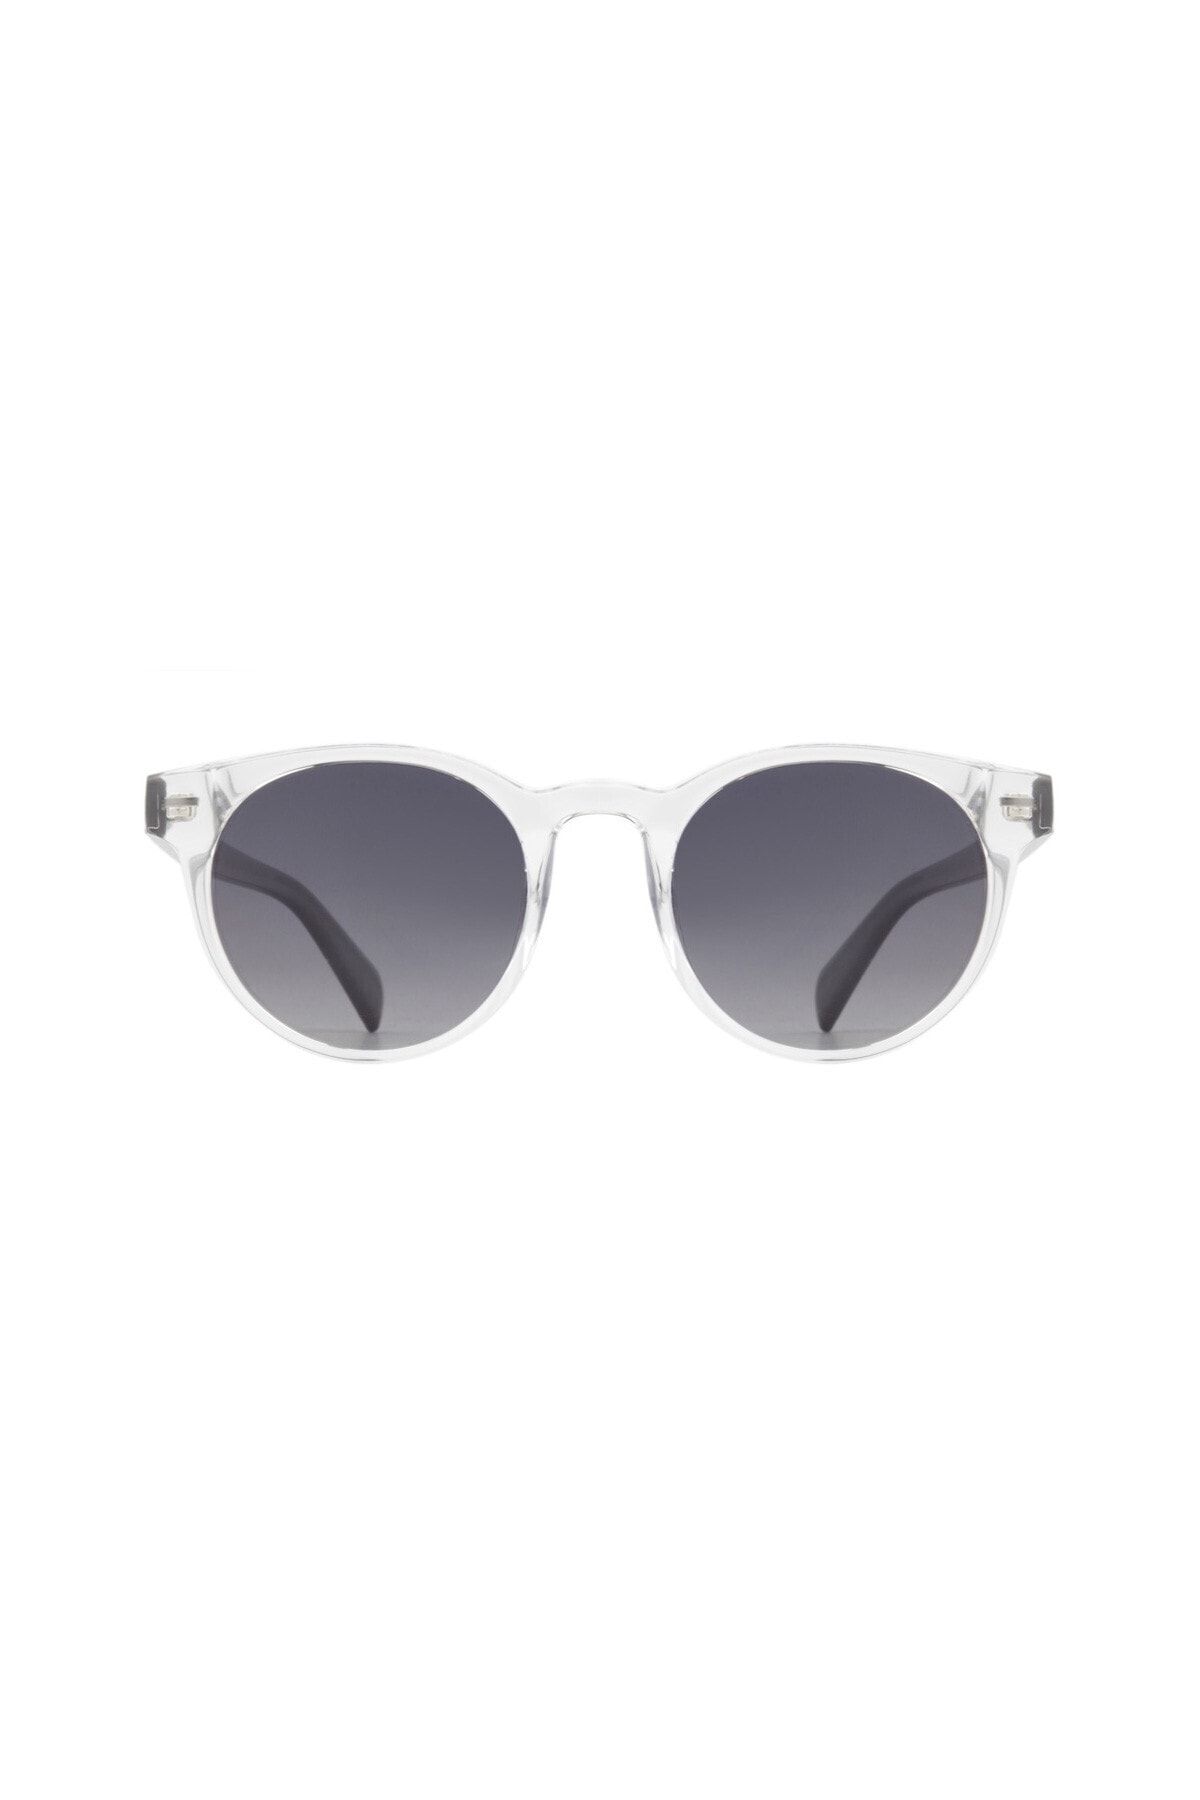 Benx Sunglasses Unisex Güneş Gözlüğü Bxgünş9251-01